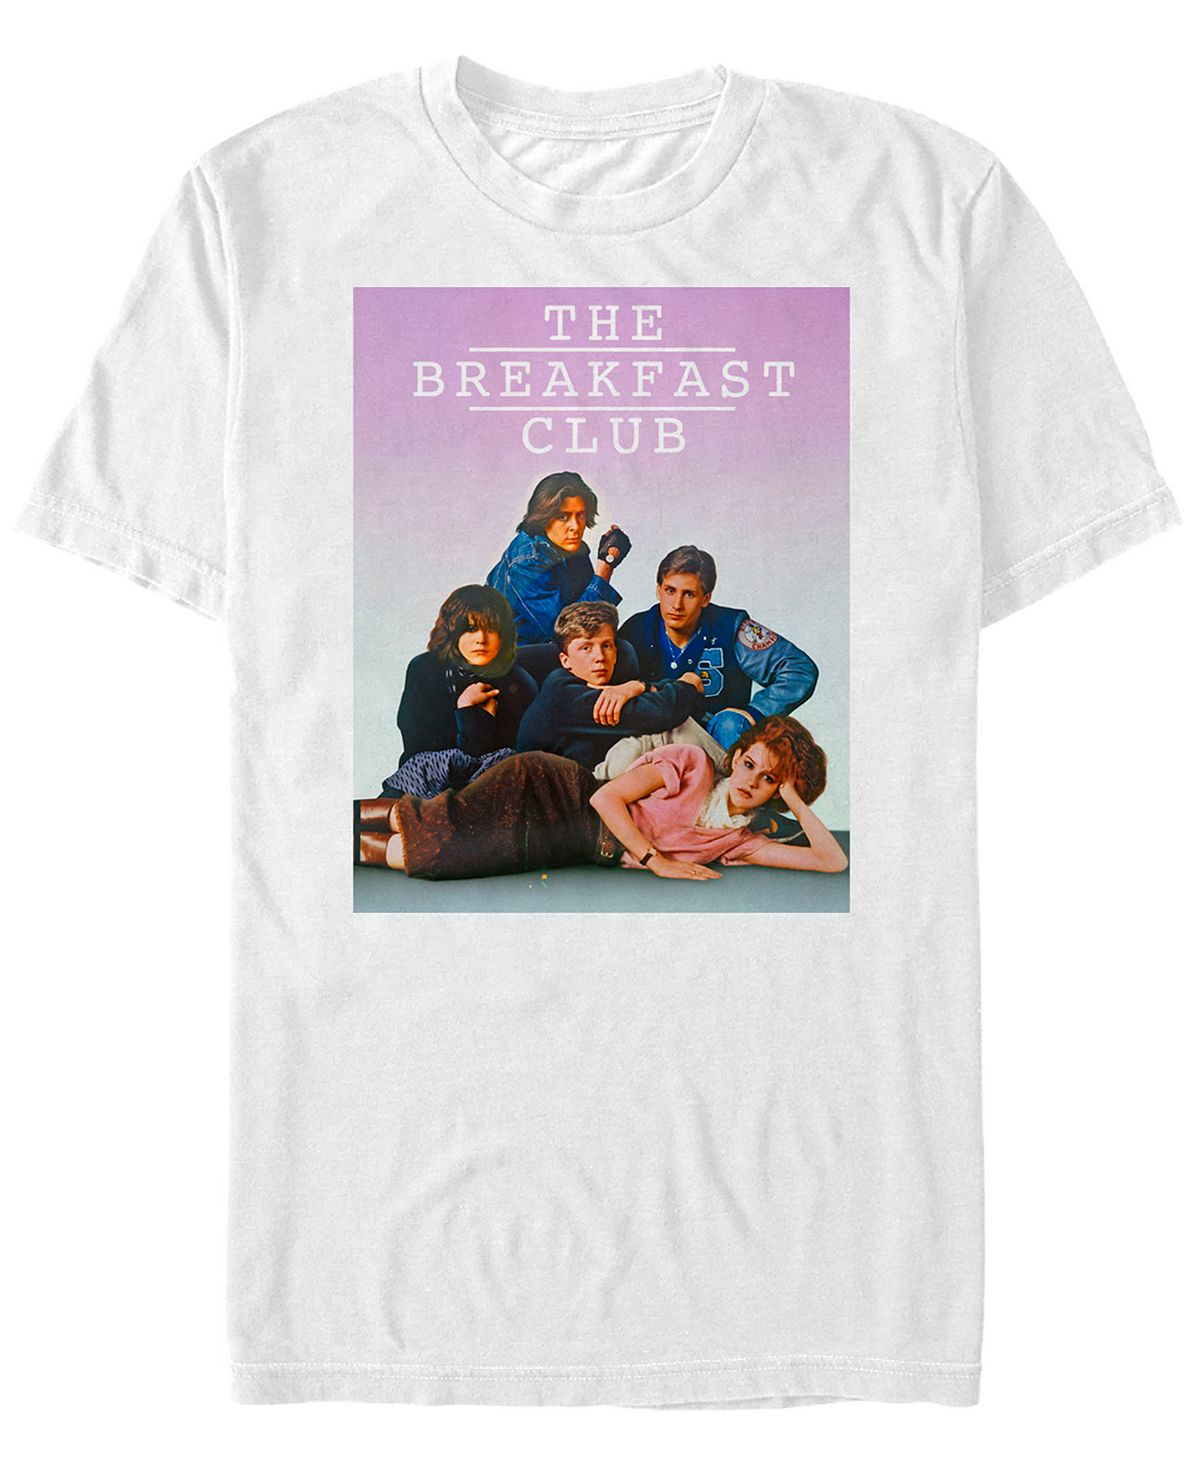 Мужская футболка с коротким рукавом в групповой позе the breakfast club с выцветшим фоном Fifth Sun, белый